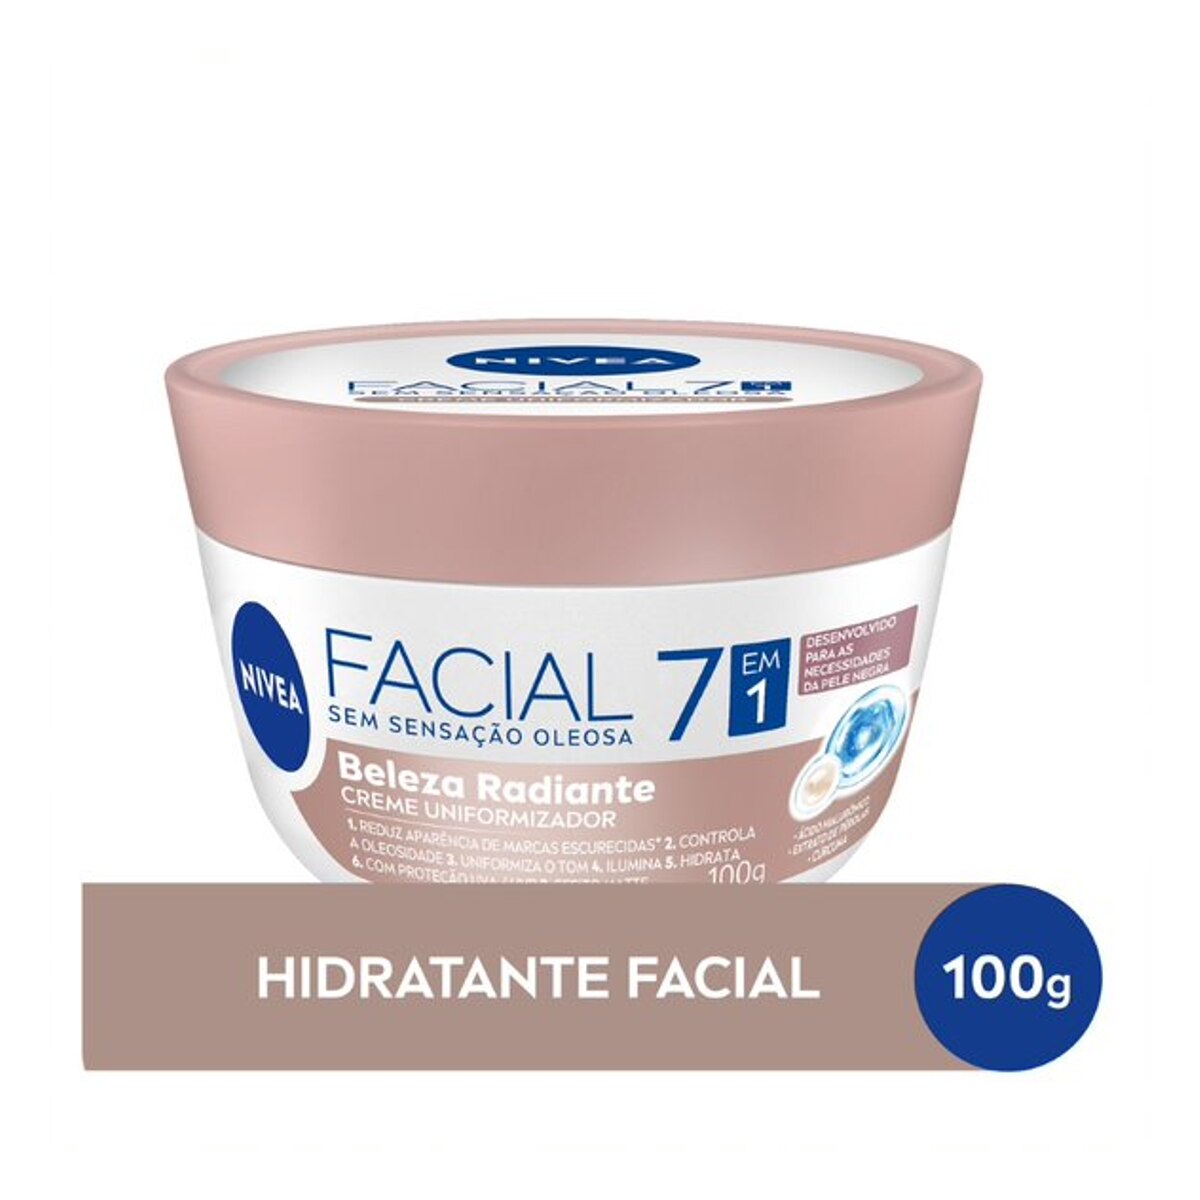 Creme Uniformizador Facial Nivea Beleza Radiante 7 em 1 para Pele Negra 100g